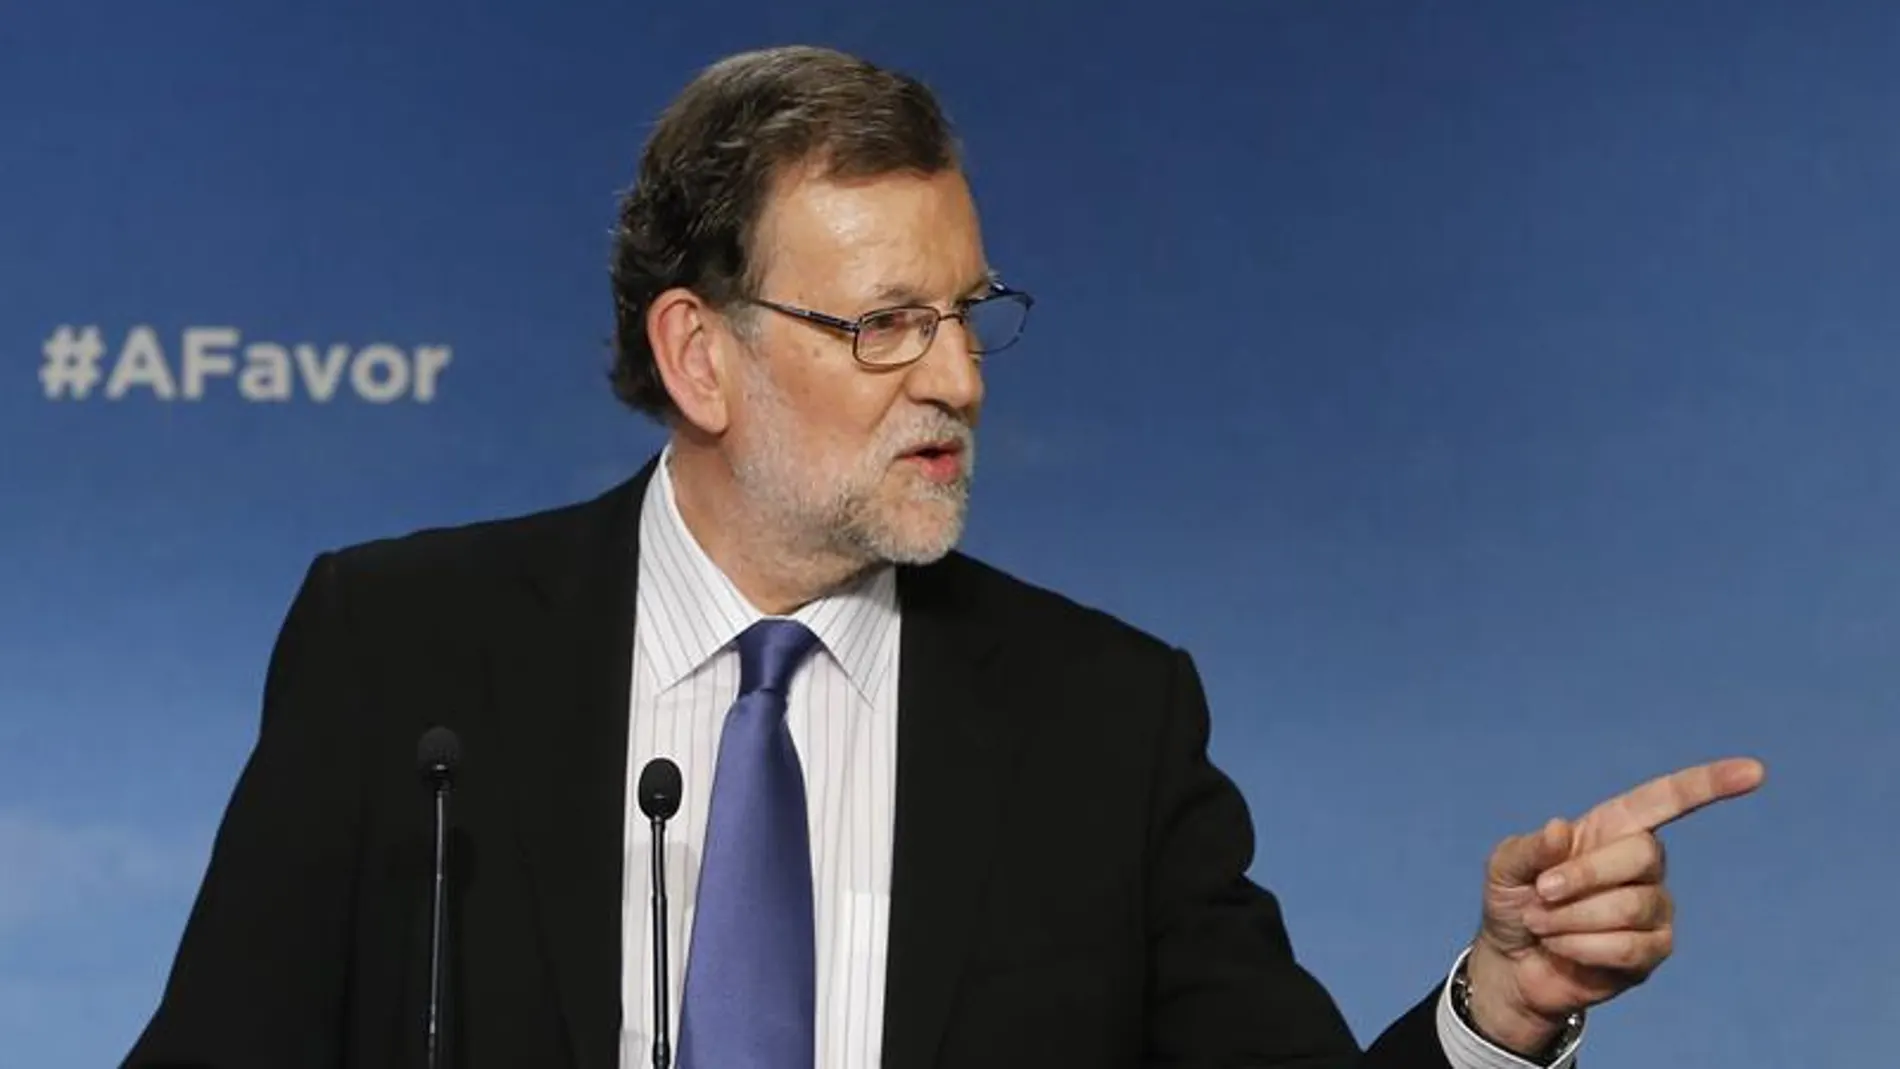 Comparecencia de Mariano Rajoy.